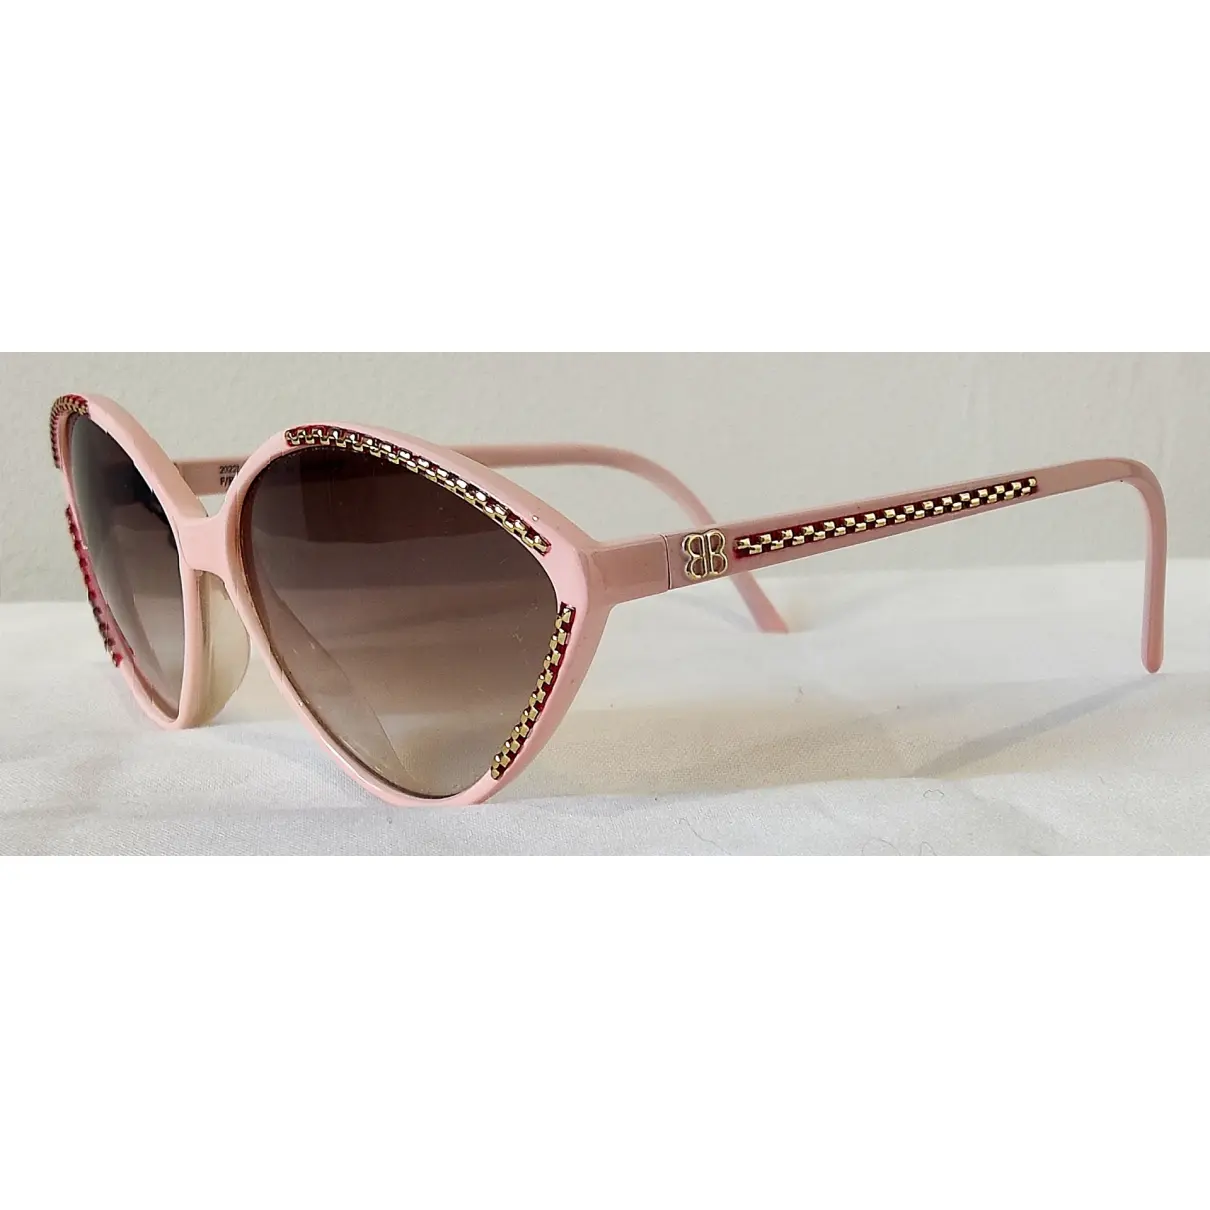 Buy Balenciaga Sunglasses online - Vintage